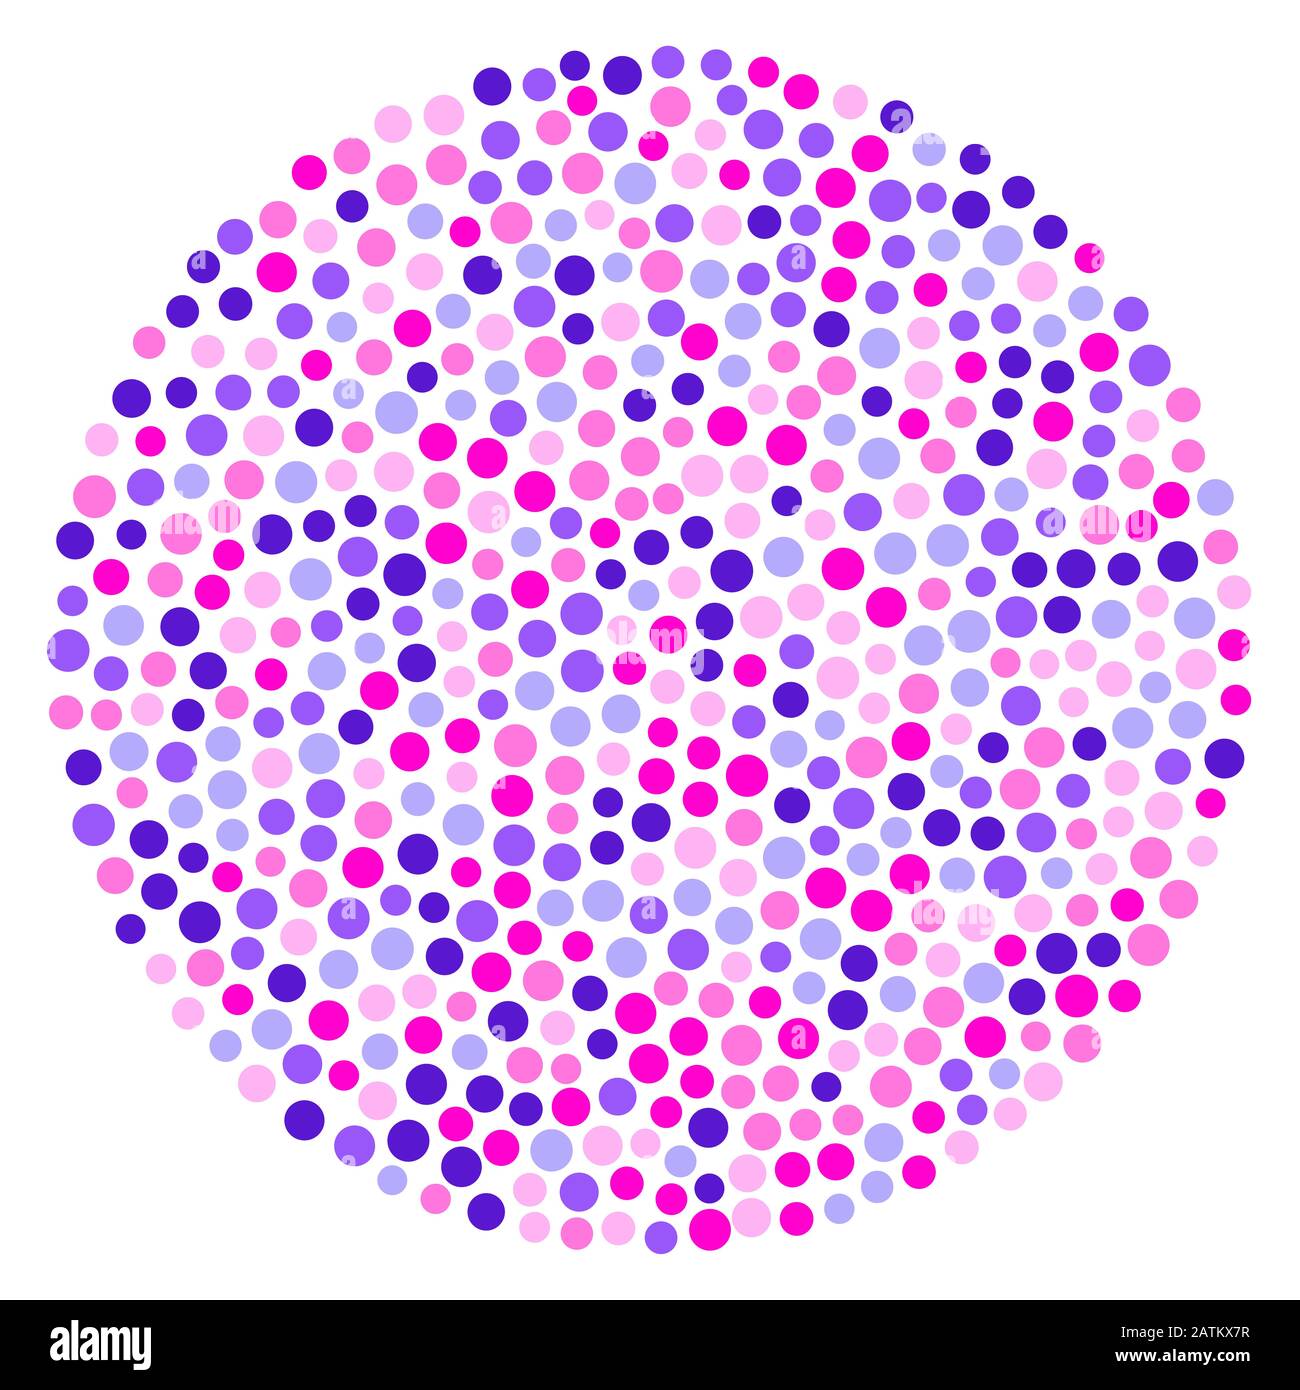 Kreisform mit pinkfarbenen und violetten Kreisen. Zufällig platzierte Punkte mit pinkfarbener und violetter Farbe, die einen kreisförmigen und gepunkteten Bereich bilden. Stockfoto